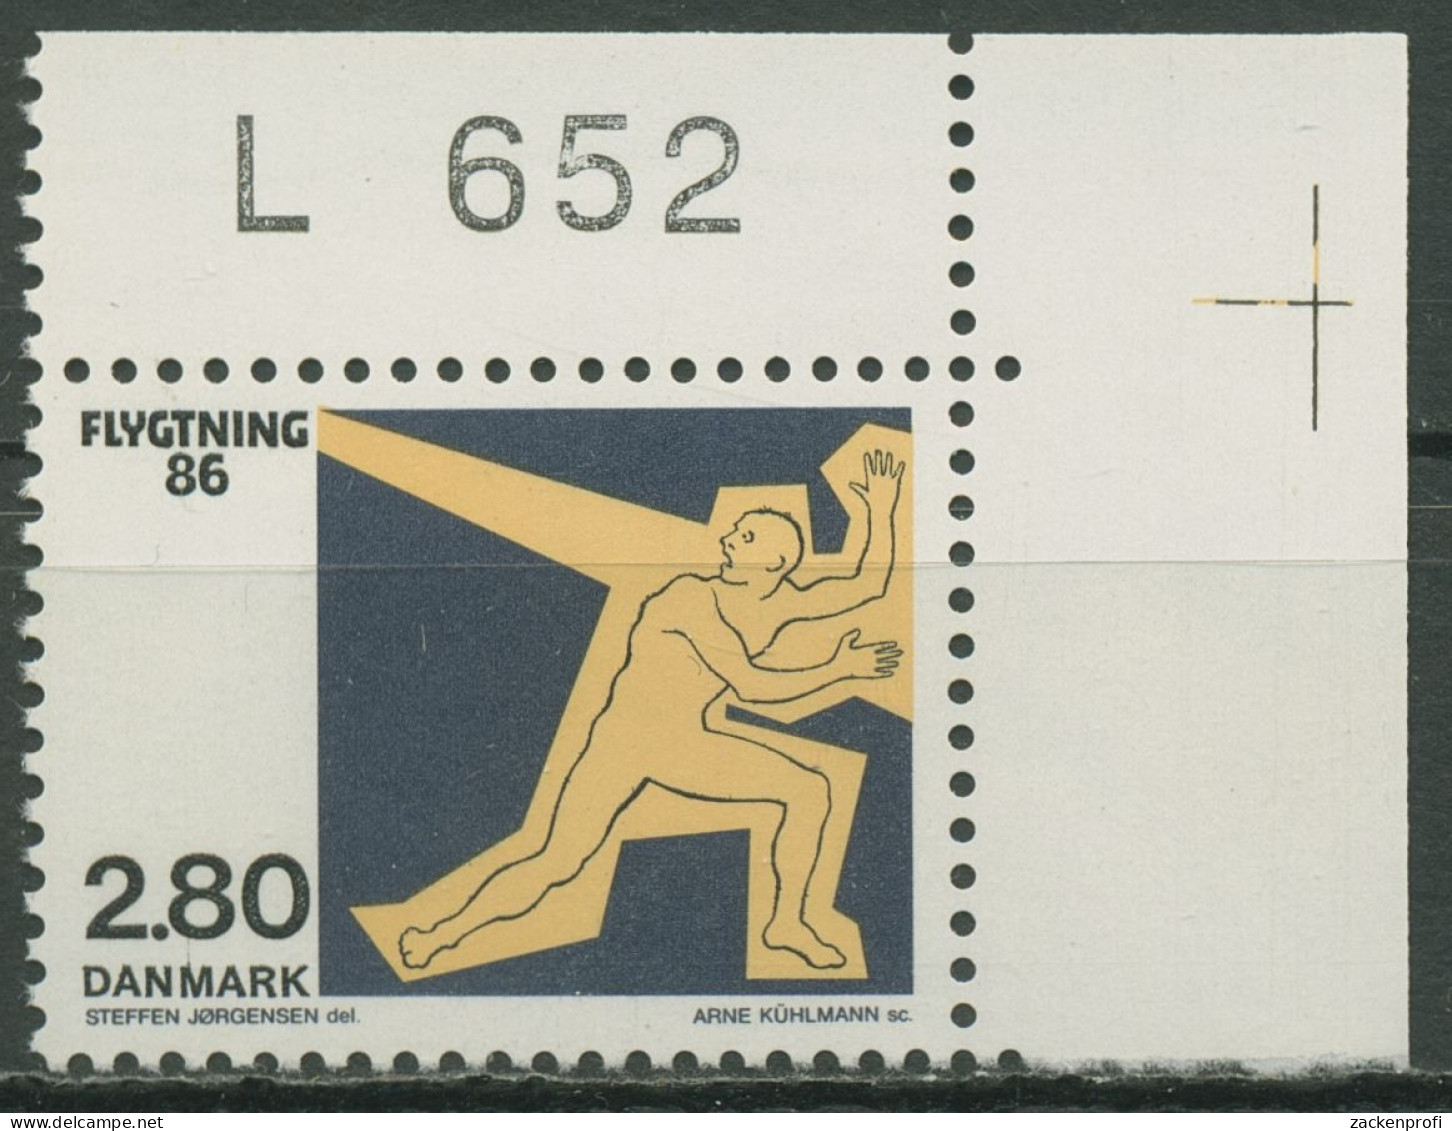 Dänemark 1986 Flüchtlingshilfe 884 Ecke Postfrisch - Unused Stamps